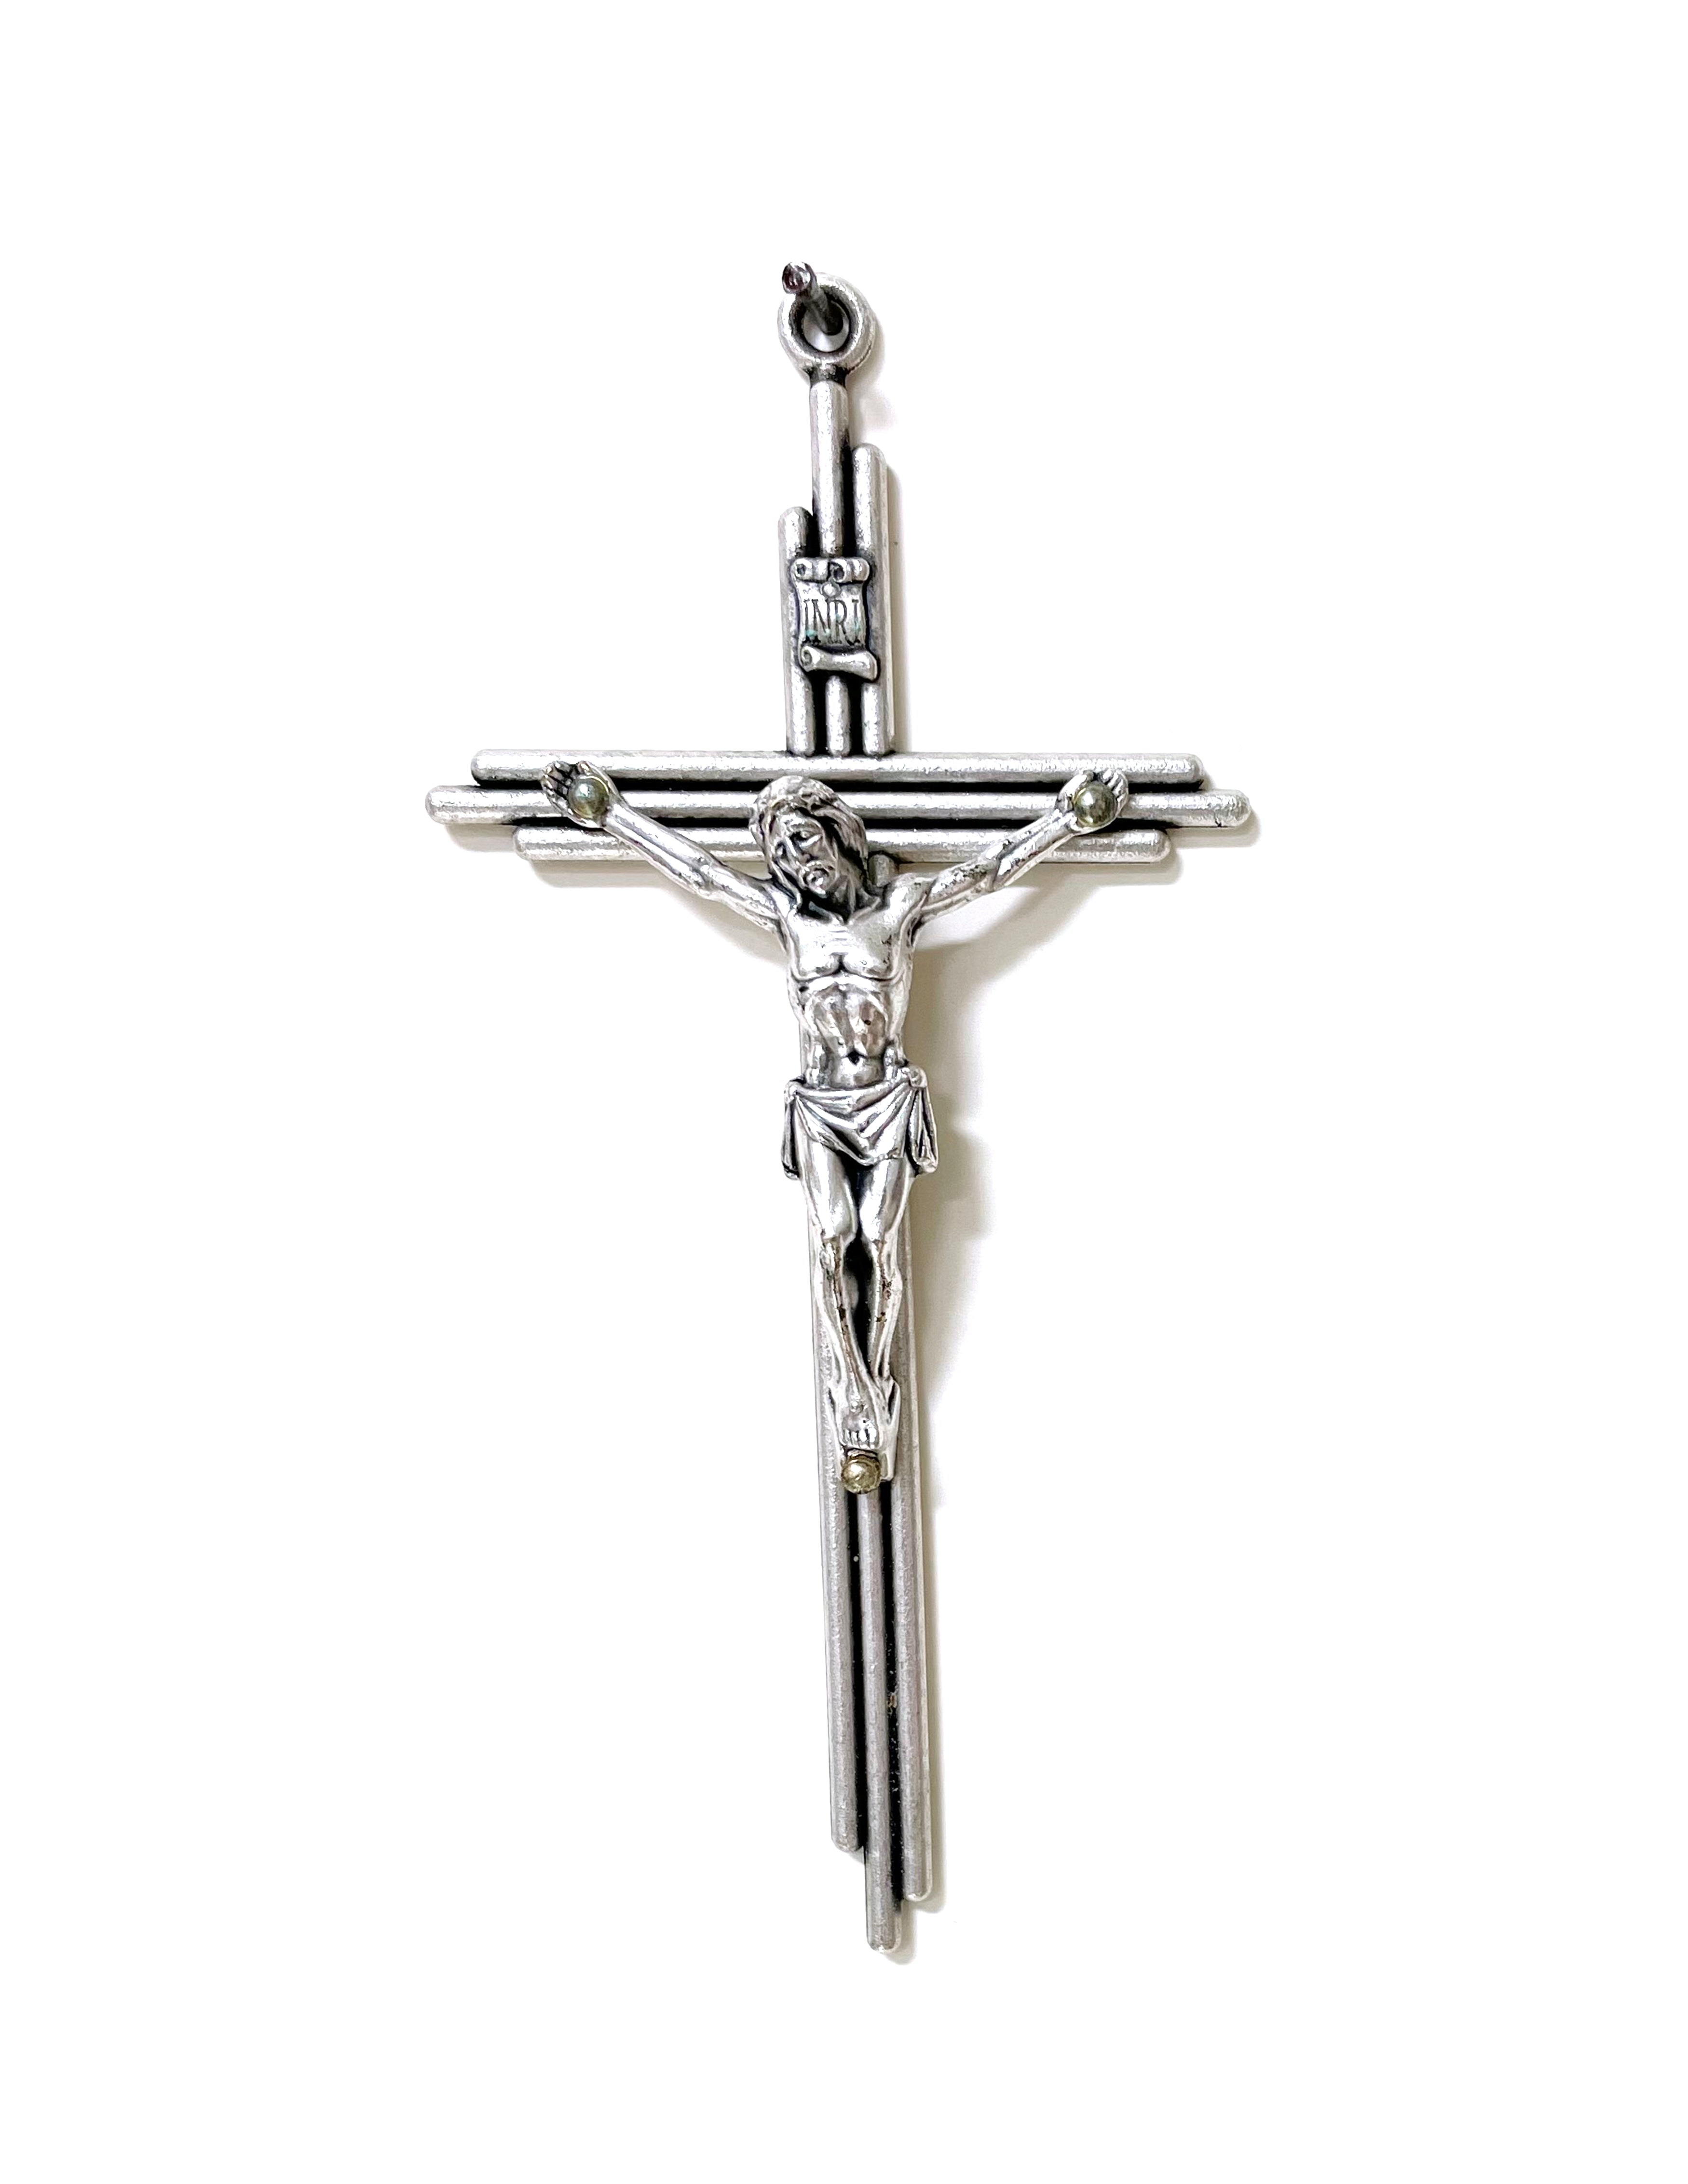 5.5" rustic metal crucifix